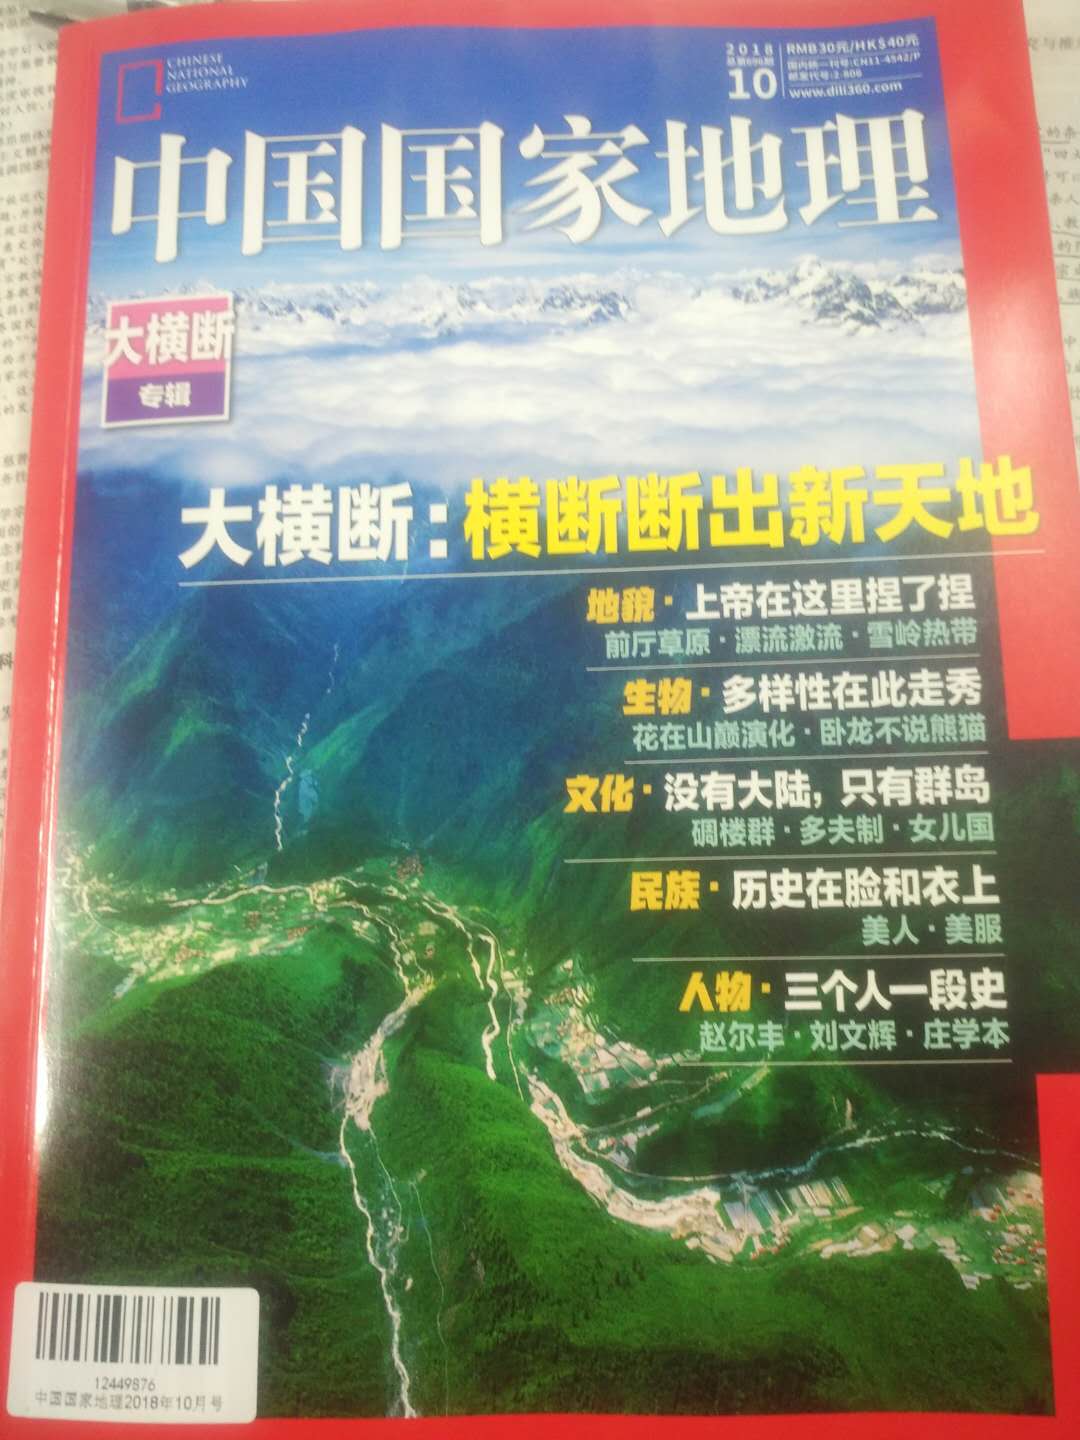 物流就是快，北京到广州，跨越南北2千多公里隔日即达。中国国家地理杂志老师推荐的，说要了解生活中的地理，必买。